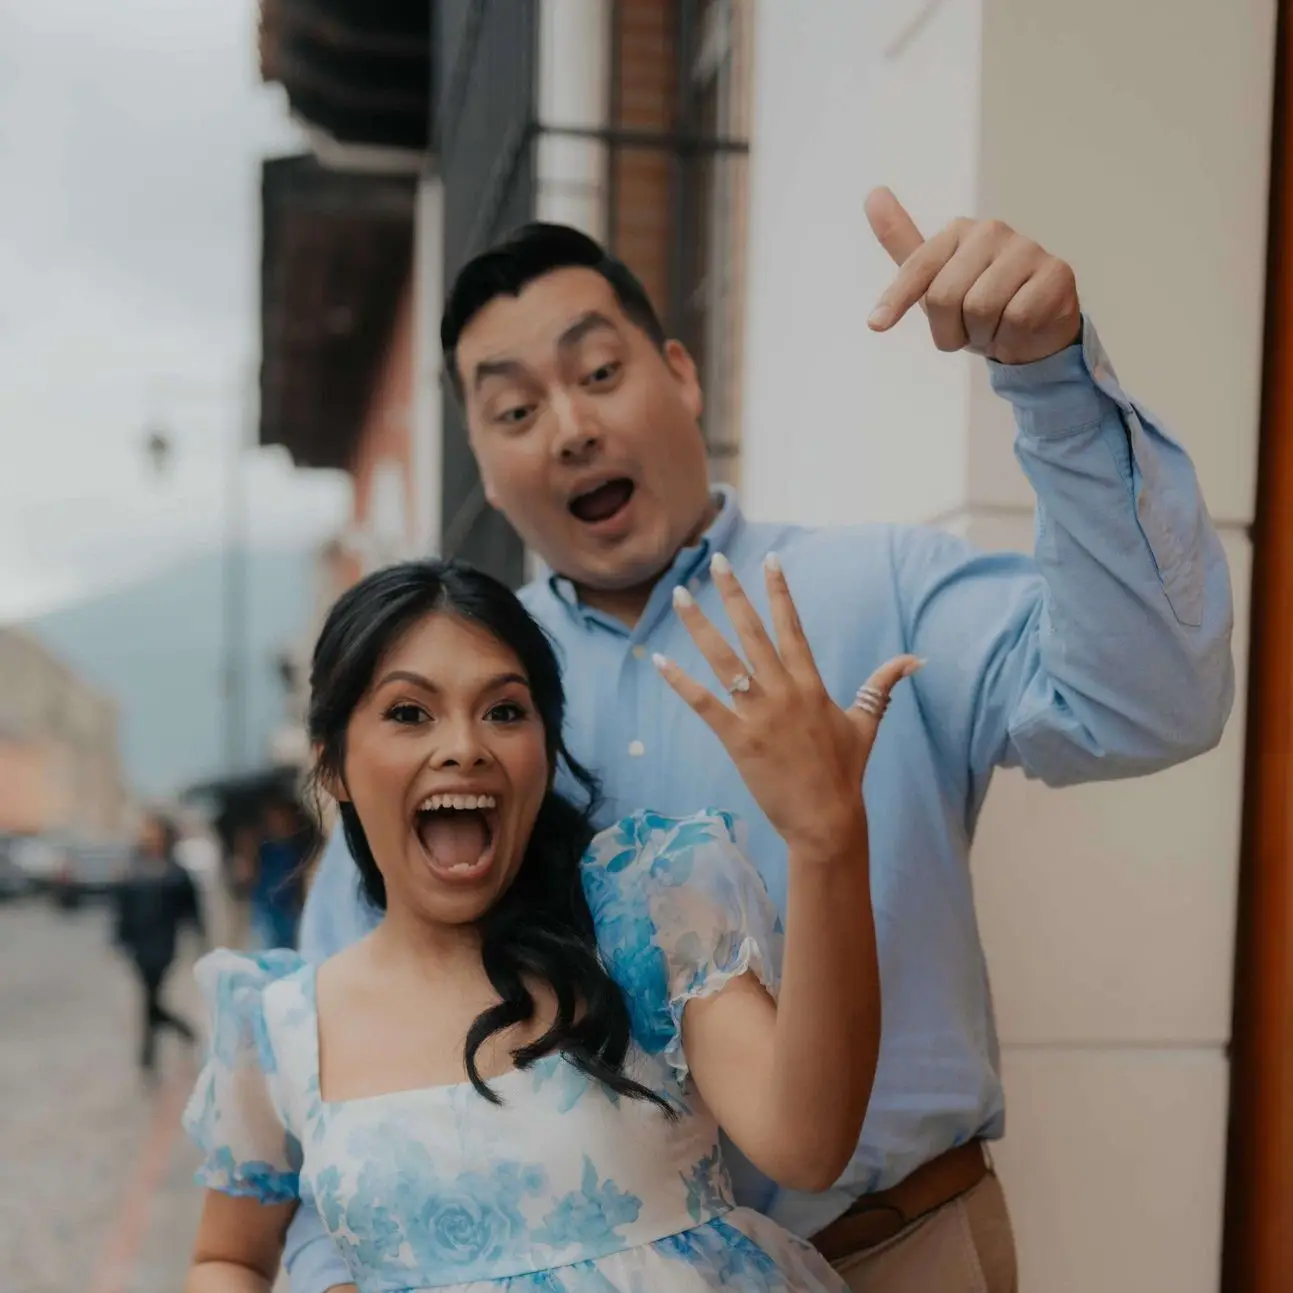 Elizabeth Cotí, maestra de Texas, de padres migrantes guatemaltecos, se comprometió en Antigua Guatemala y celebrará aquí su boda en 2025. – SoyMigrante.com